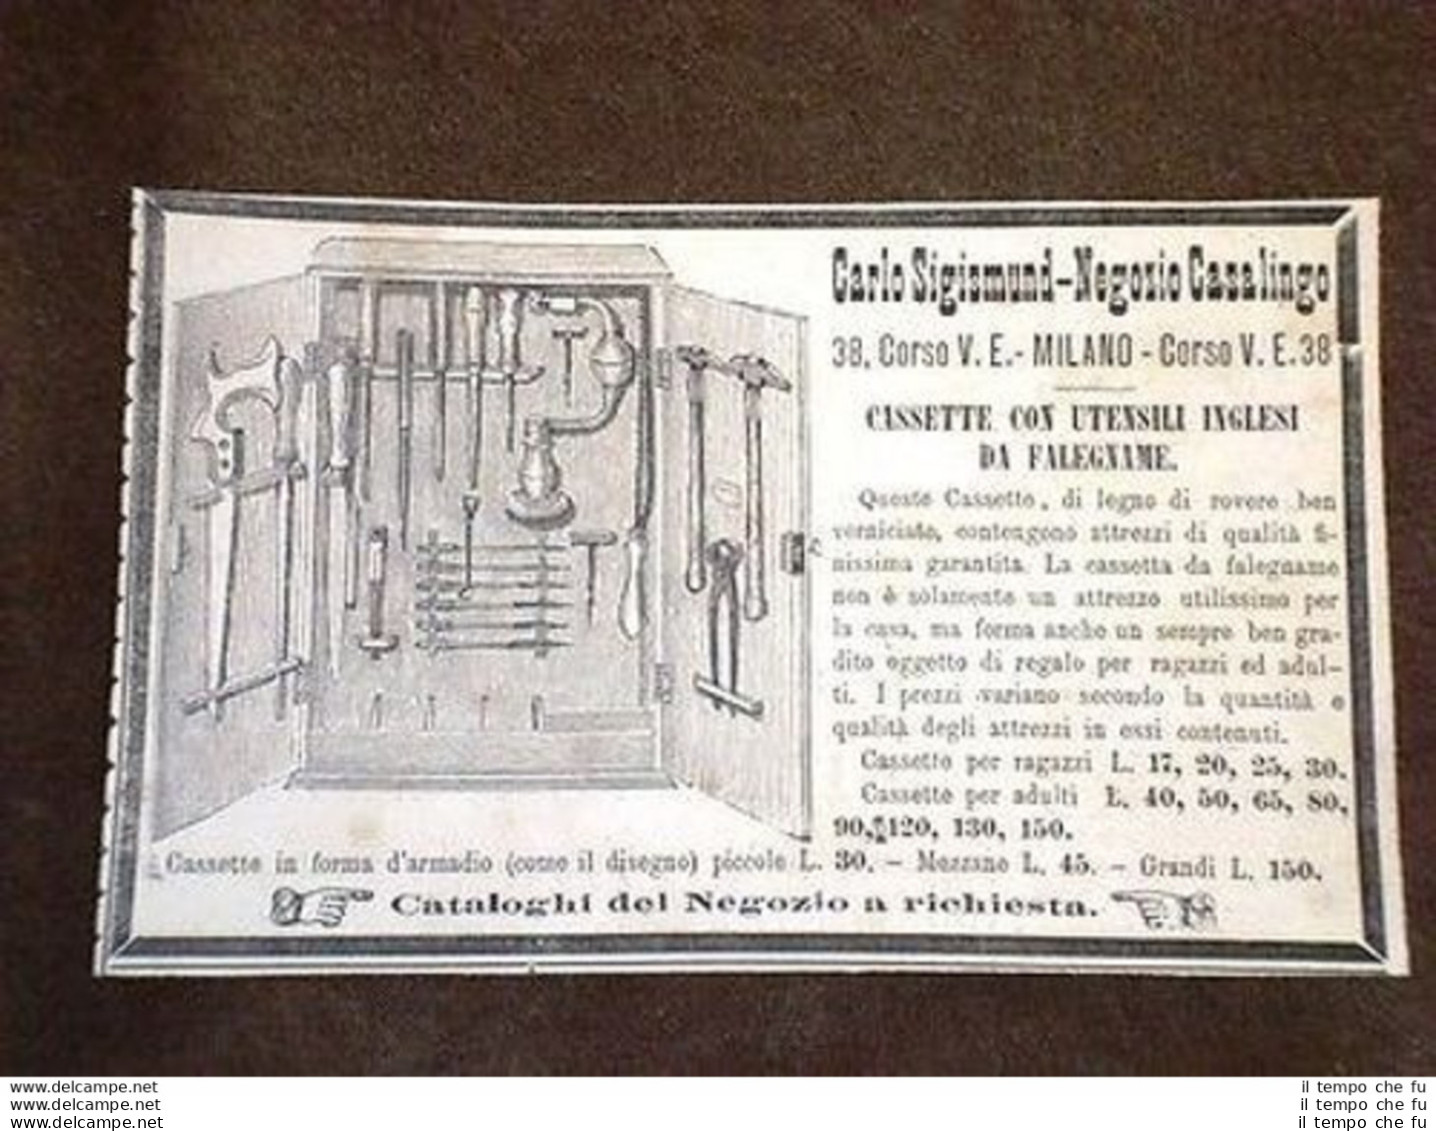 Pubblicità D'Epoca Per Collezionisti Utensili Negozio Carlo Sigismund Milano - Before 1900